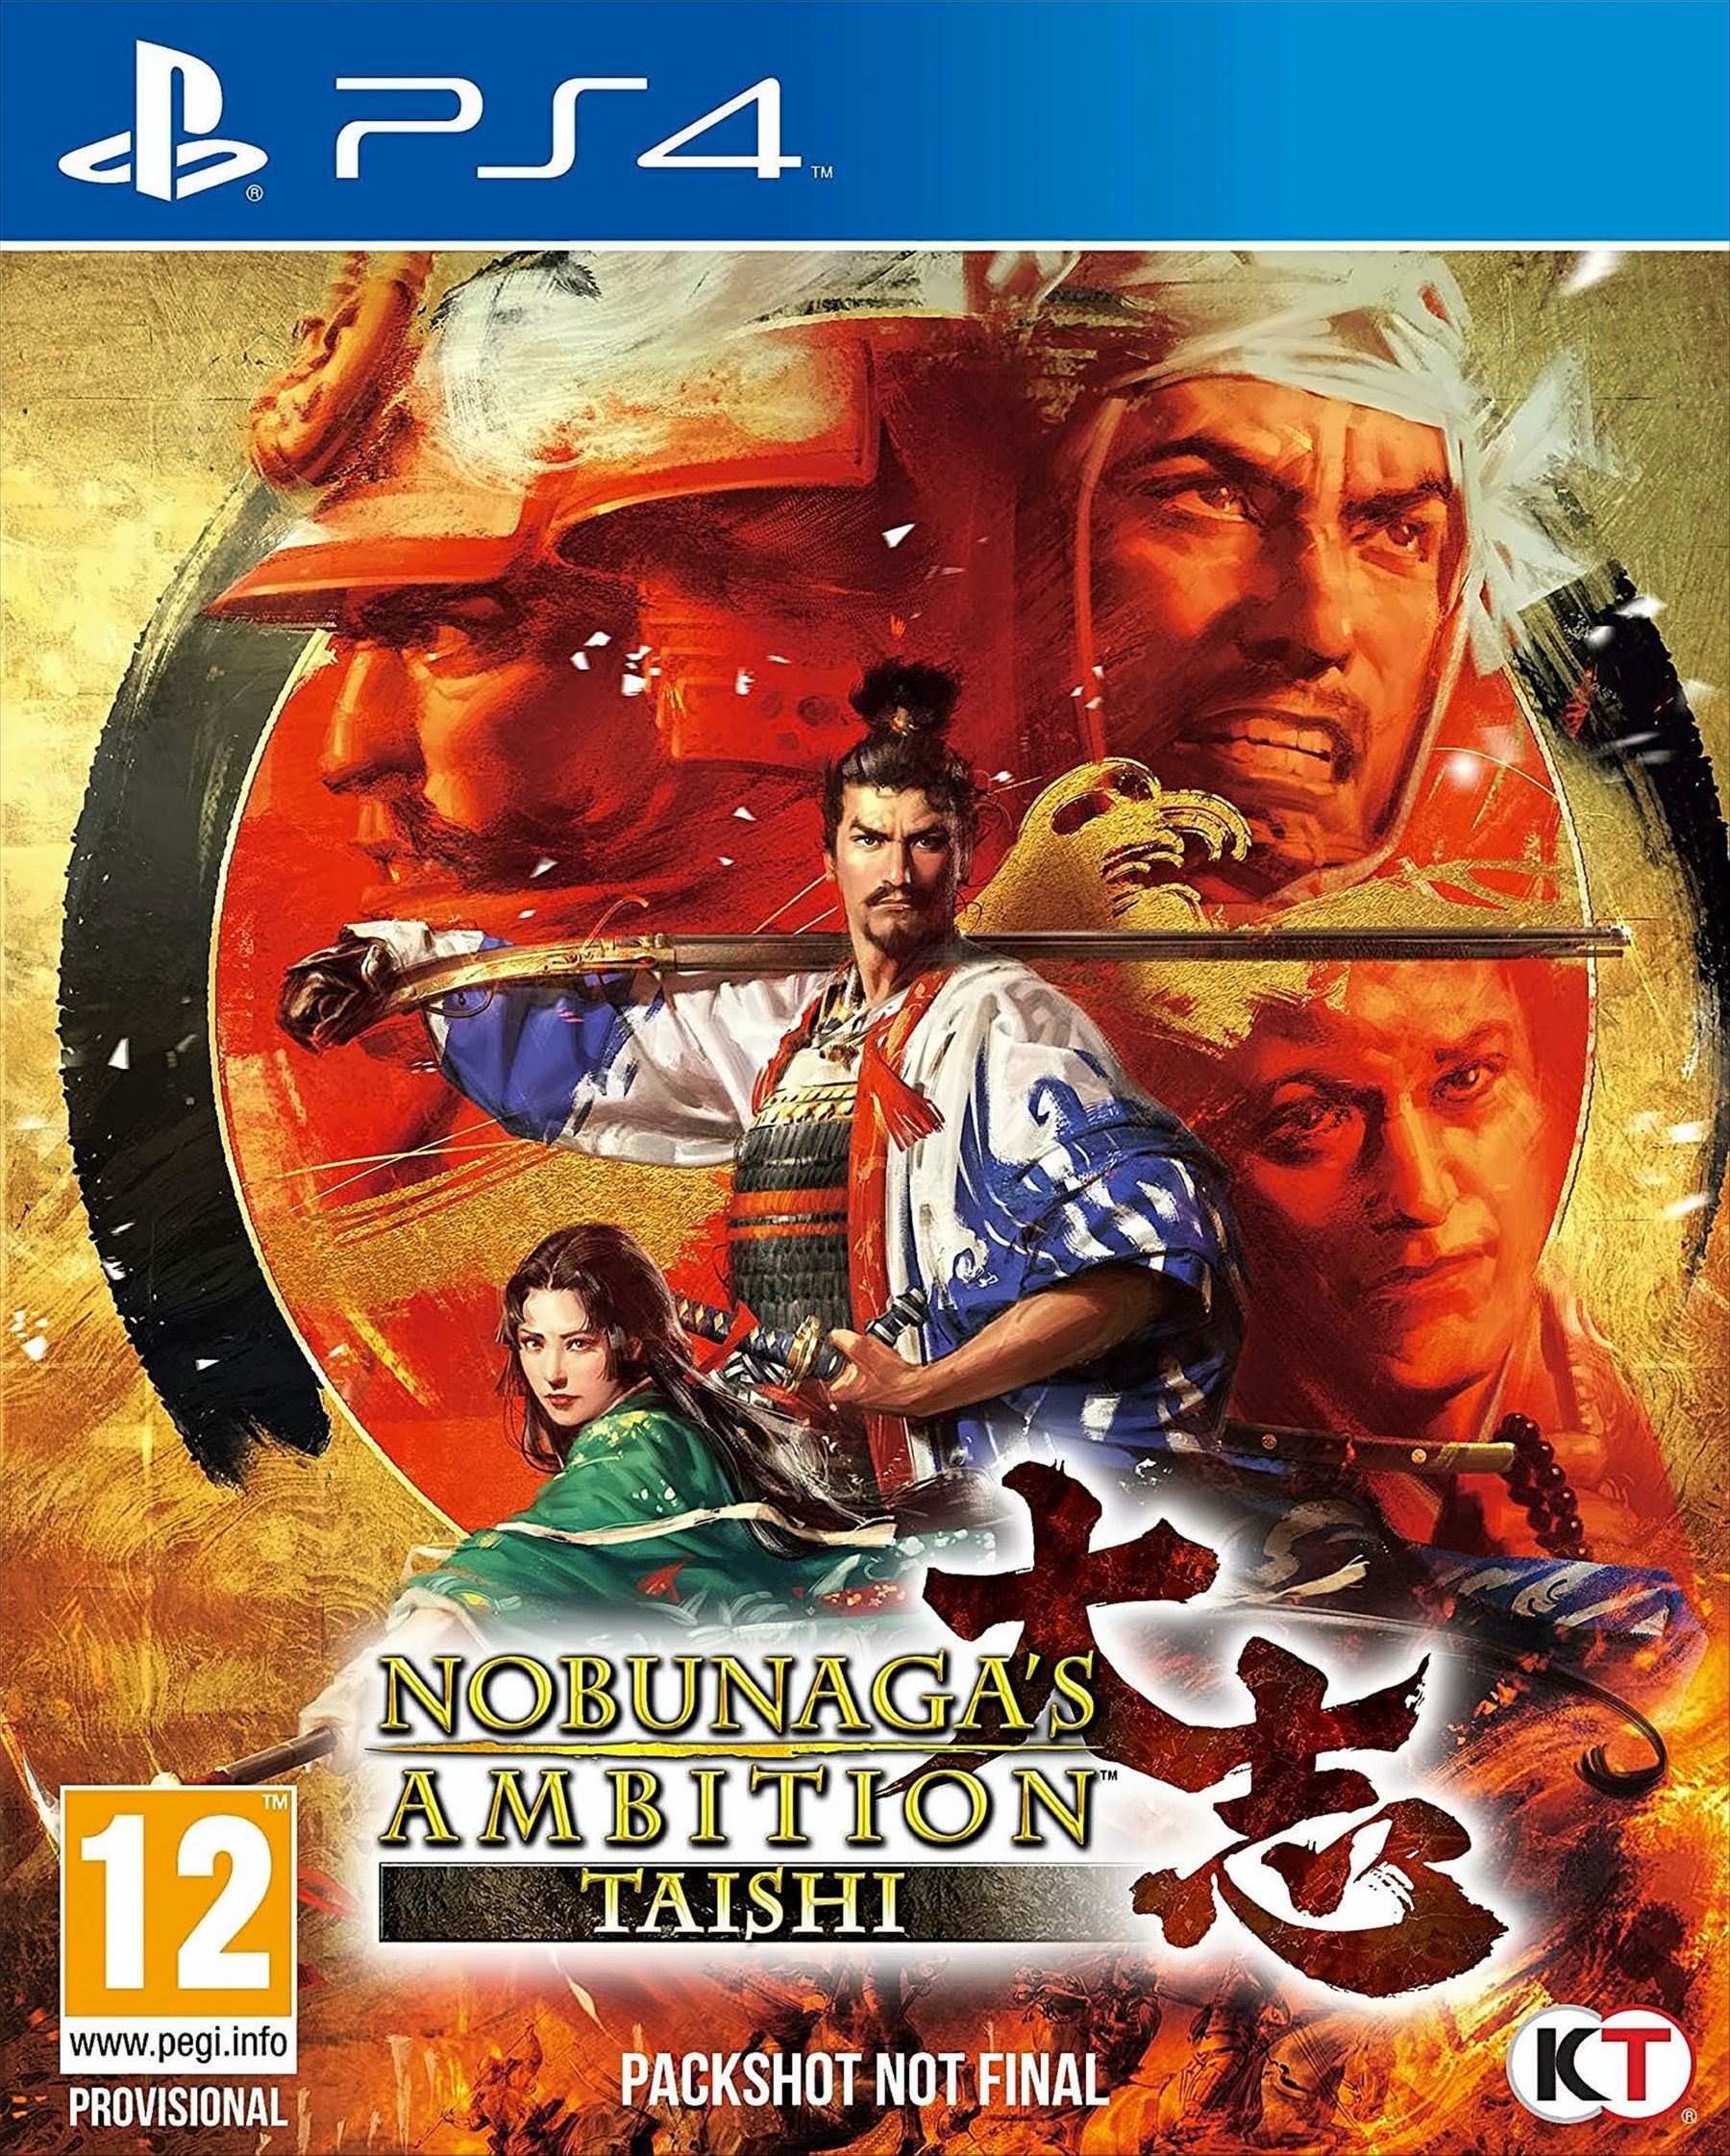 Ambition [PlayStation Nobunagas - 4] PS-4 Taishi